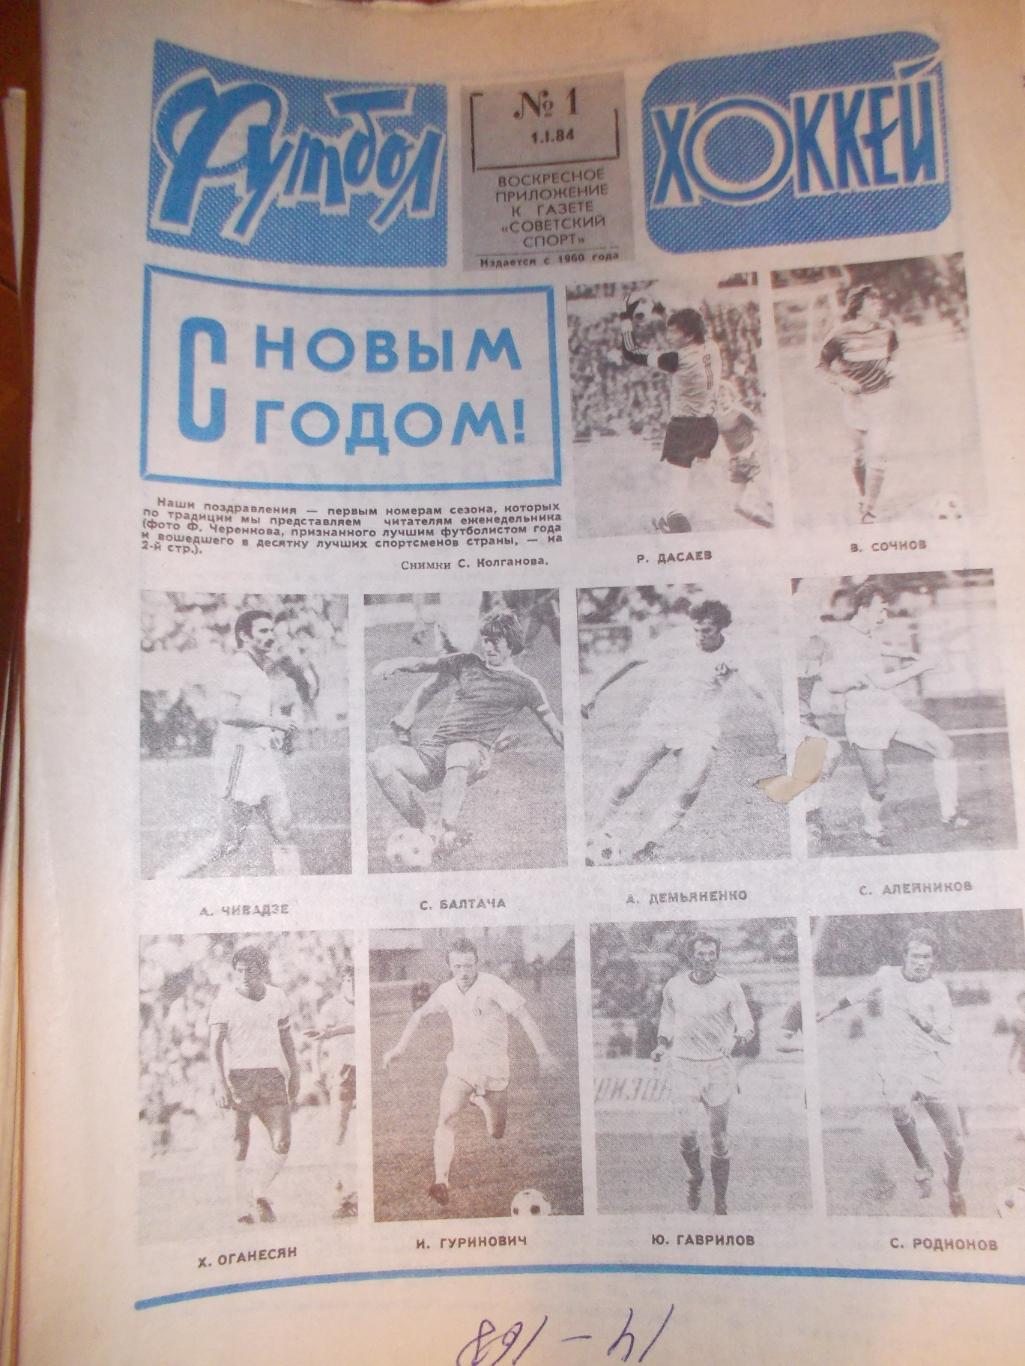 Еженедельник Футбол-Хоккей,1984 полный комплект. + 5 программ на выбор с фото.